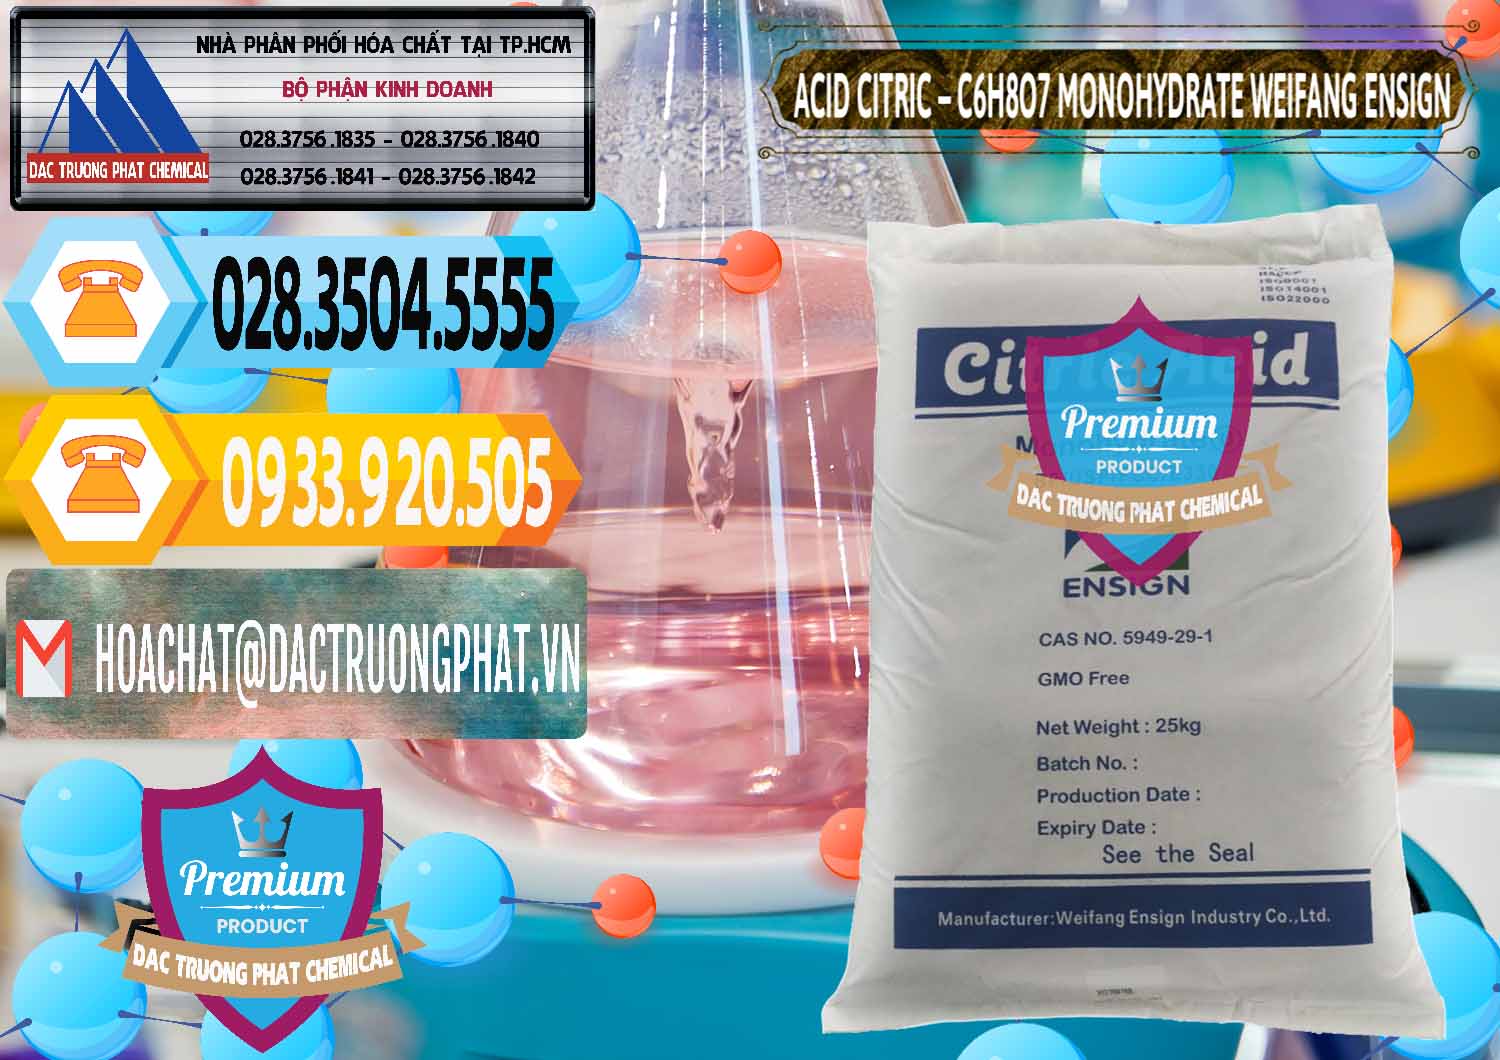 Công ty chuyên cung ứng - bán Acid Citric - Axit Citric Monohydrate Weifang Trung Quốc China - 0009 - Đơn vị chuyên phân phối - nhập khẩu hóa chất tại TP.HCM - hoachattayrua.net